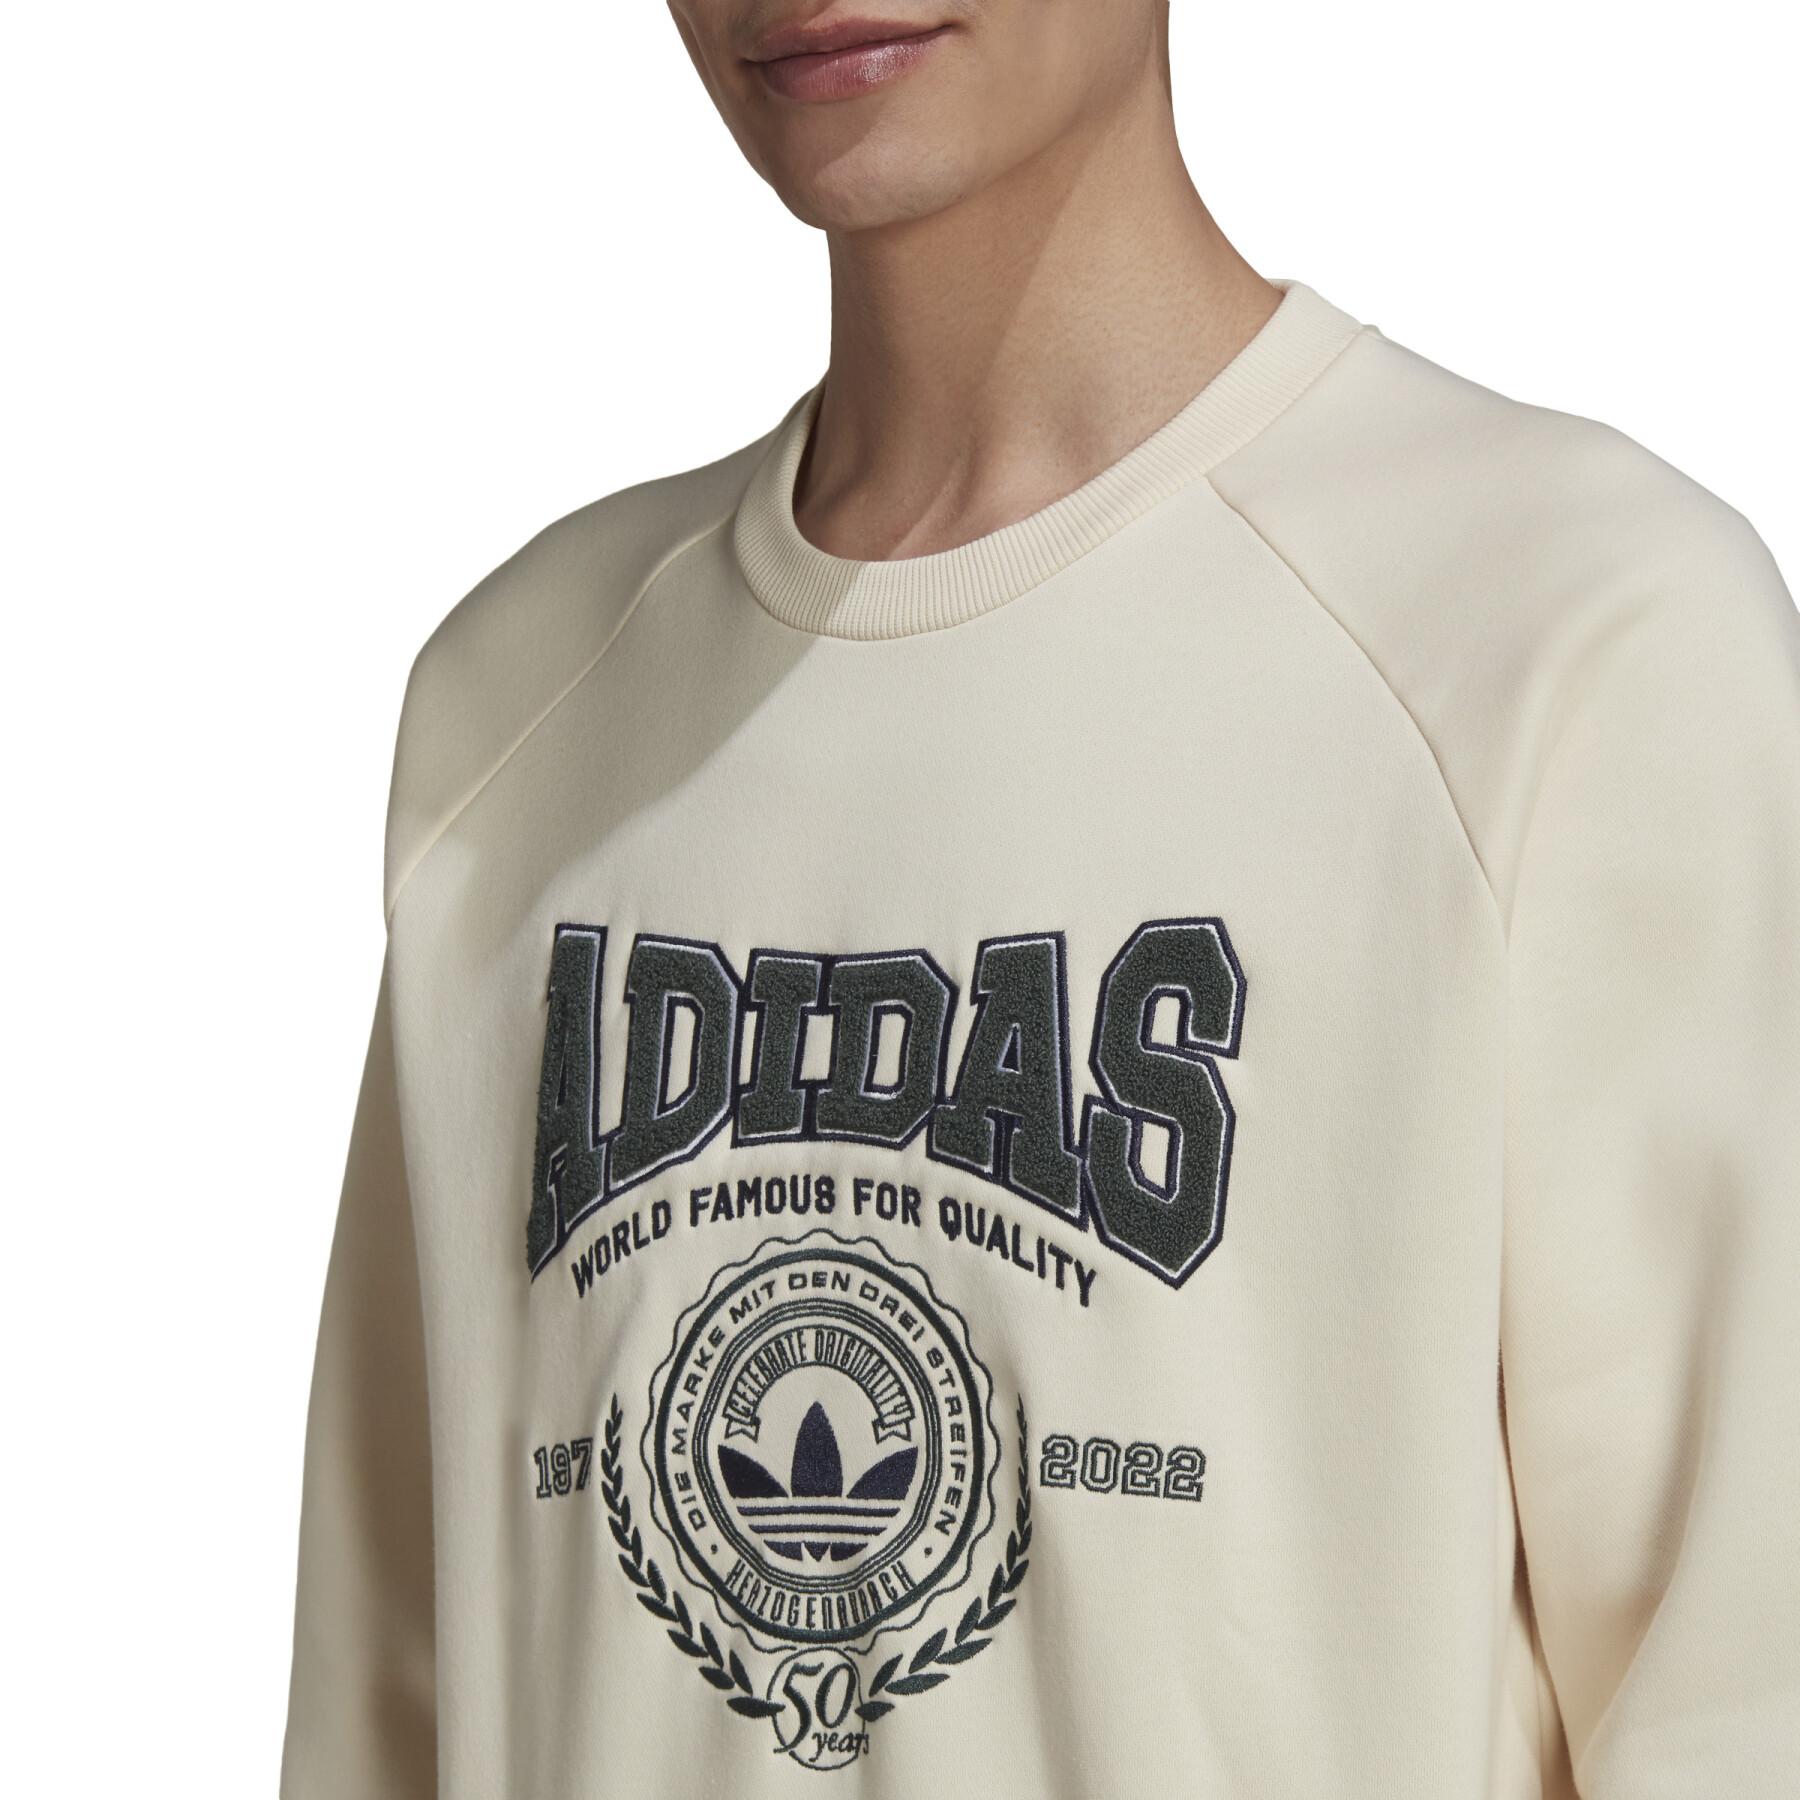 Sweatshirt à col rond adidas Originals Varsity